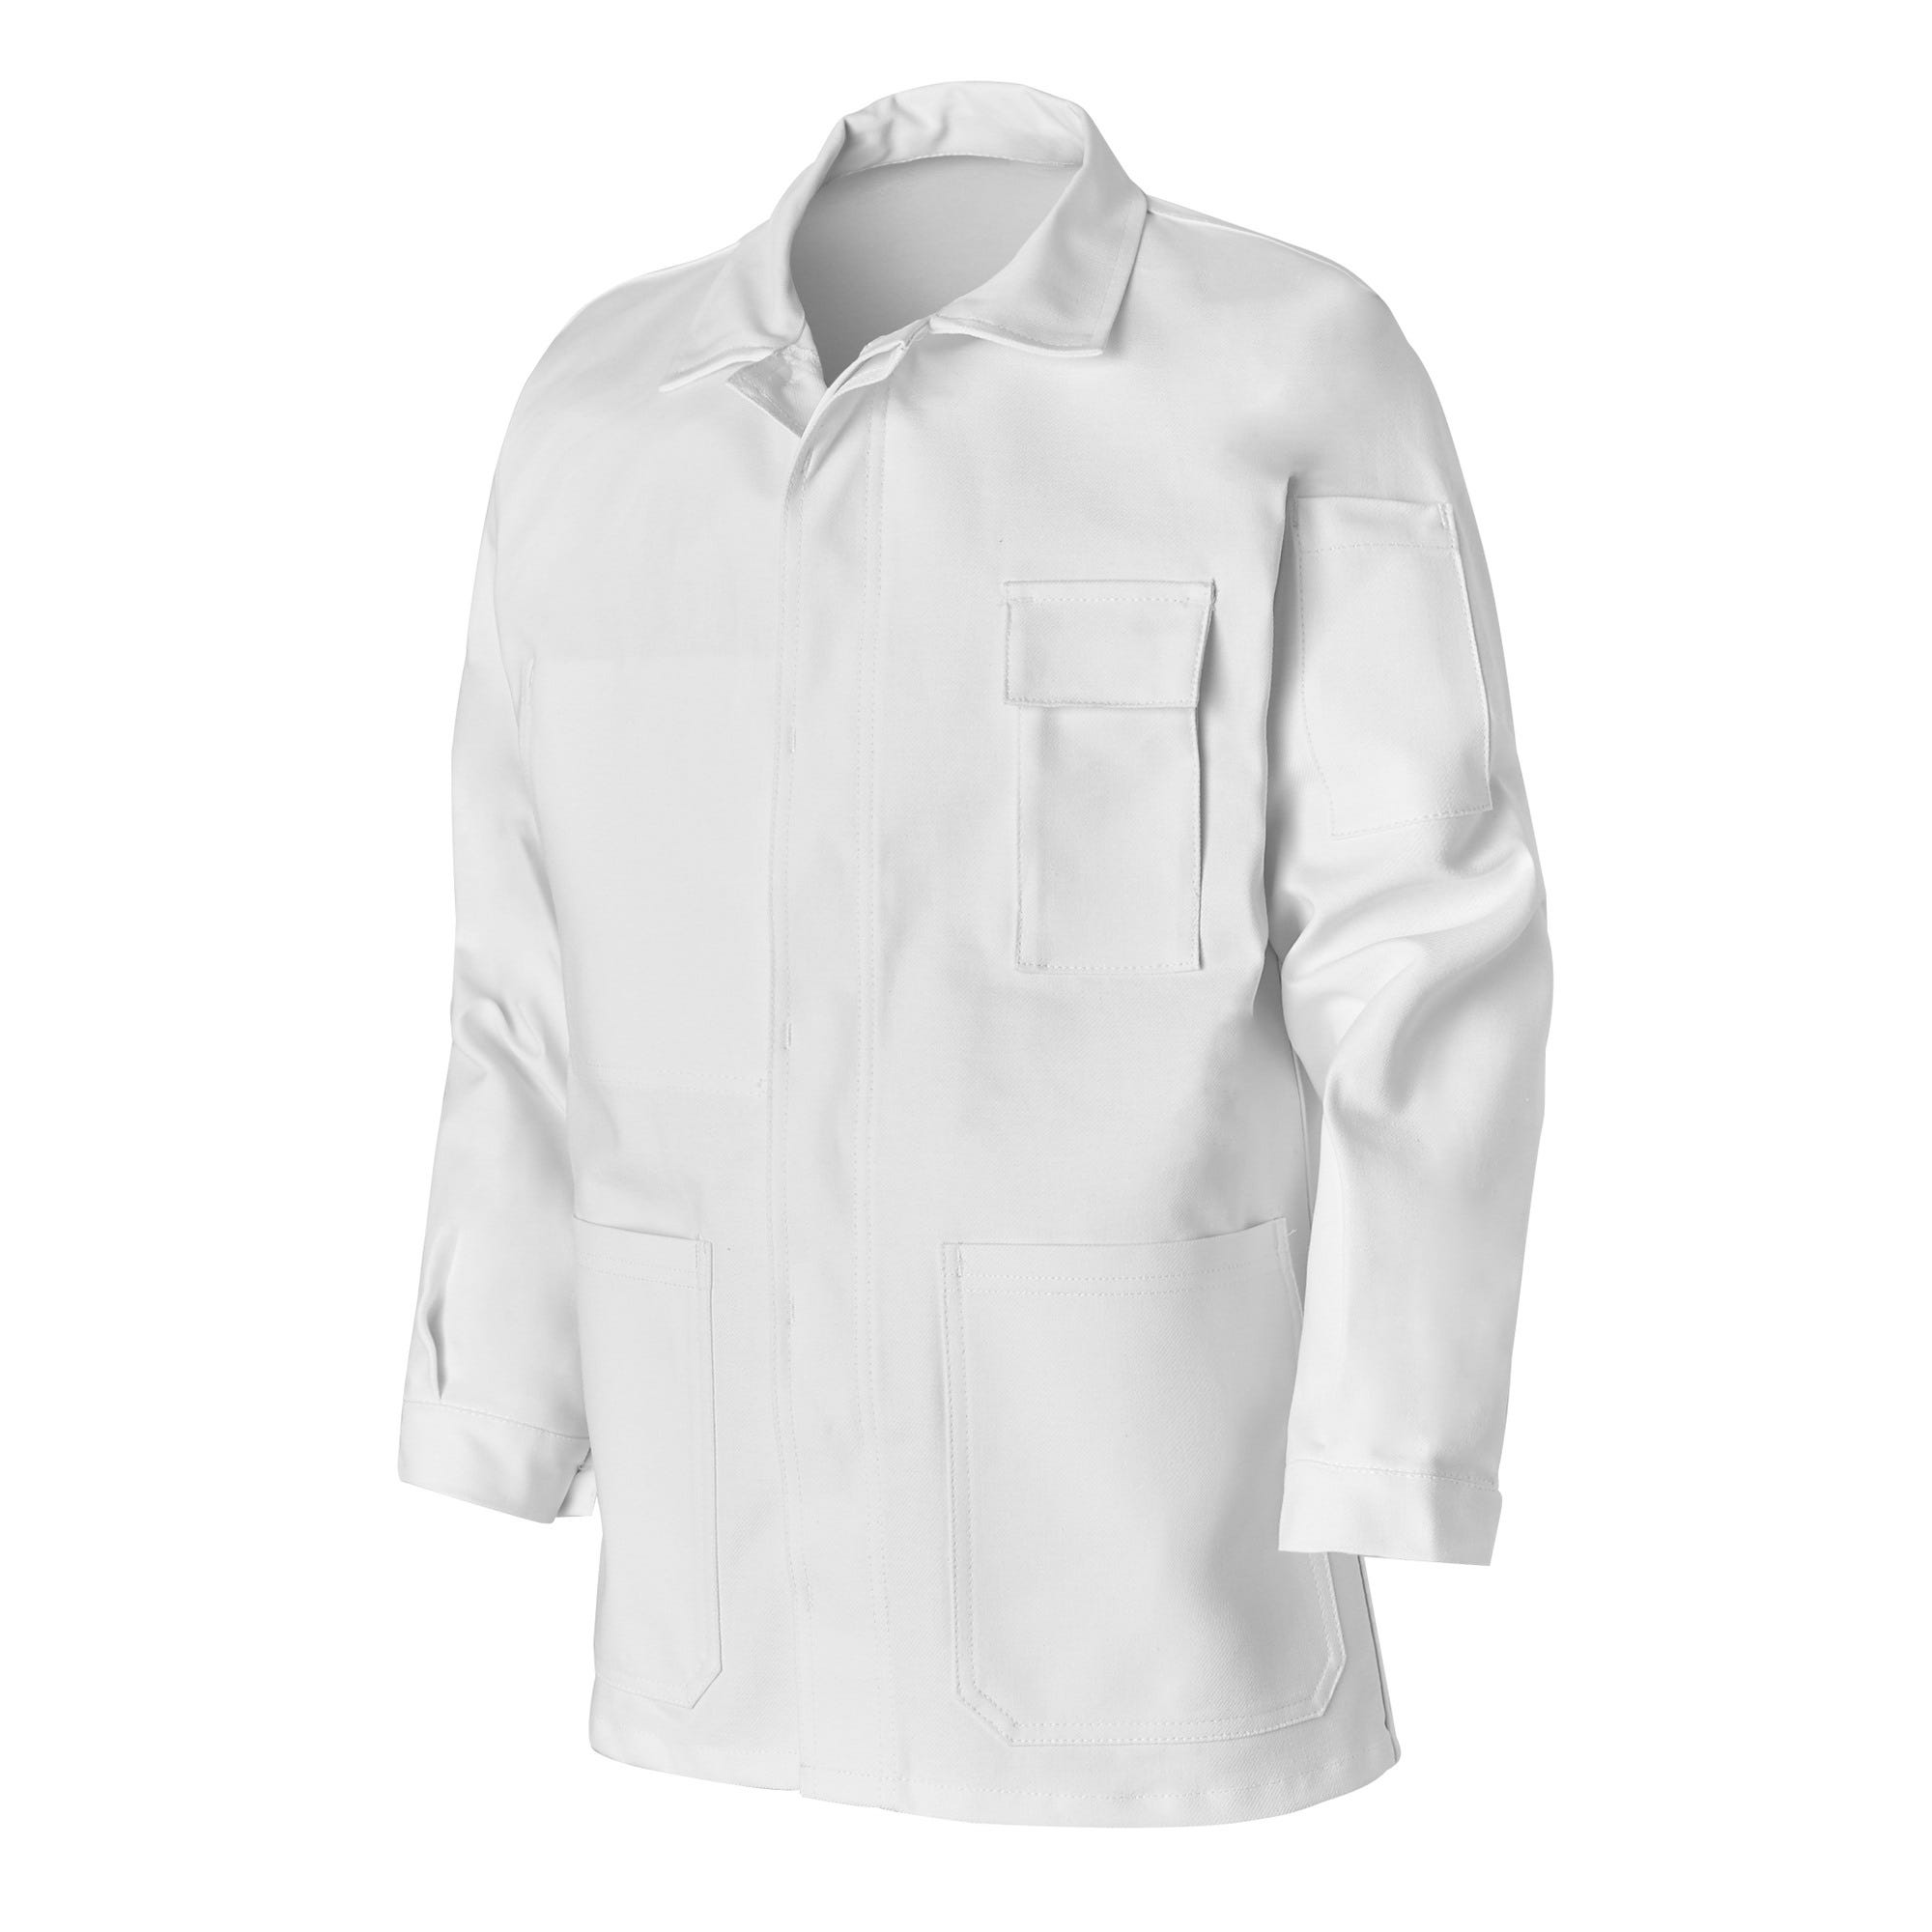 Veste de protection en coton blanc T2 - NEW PILOTE 0